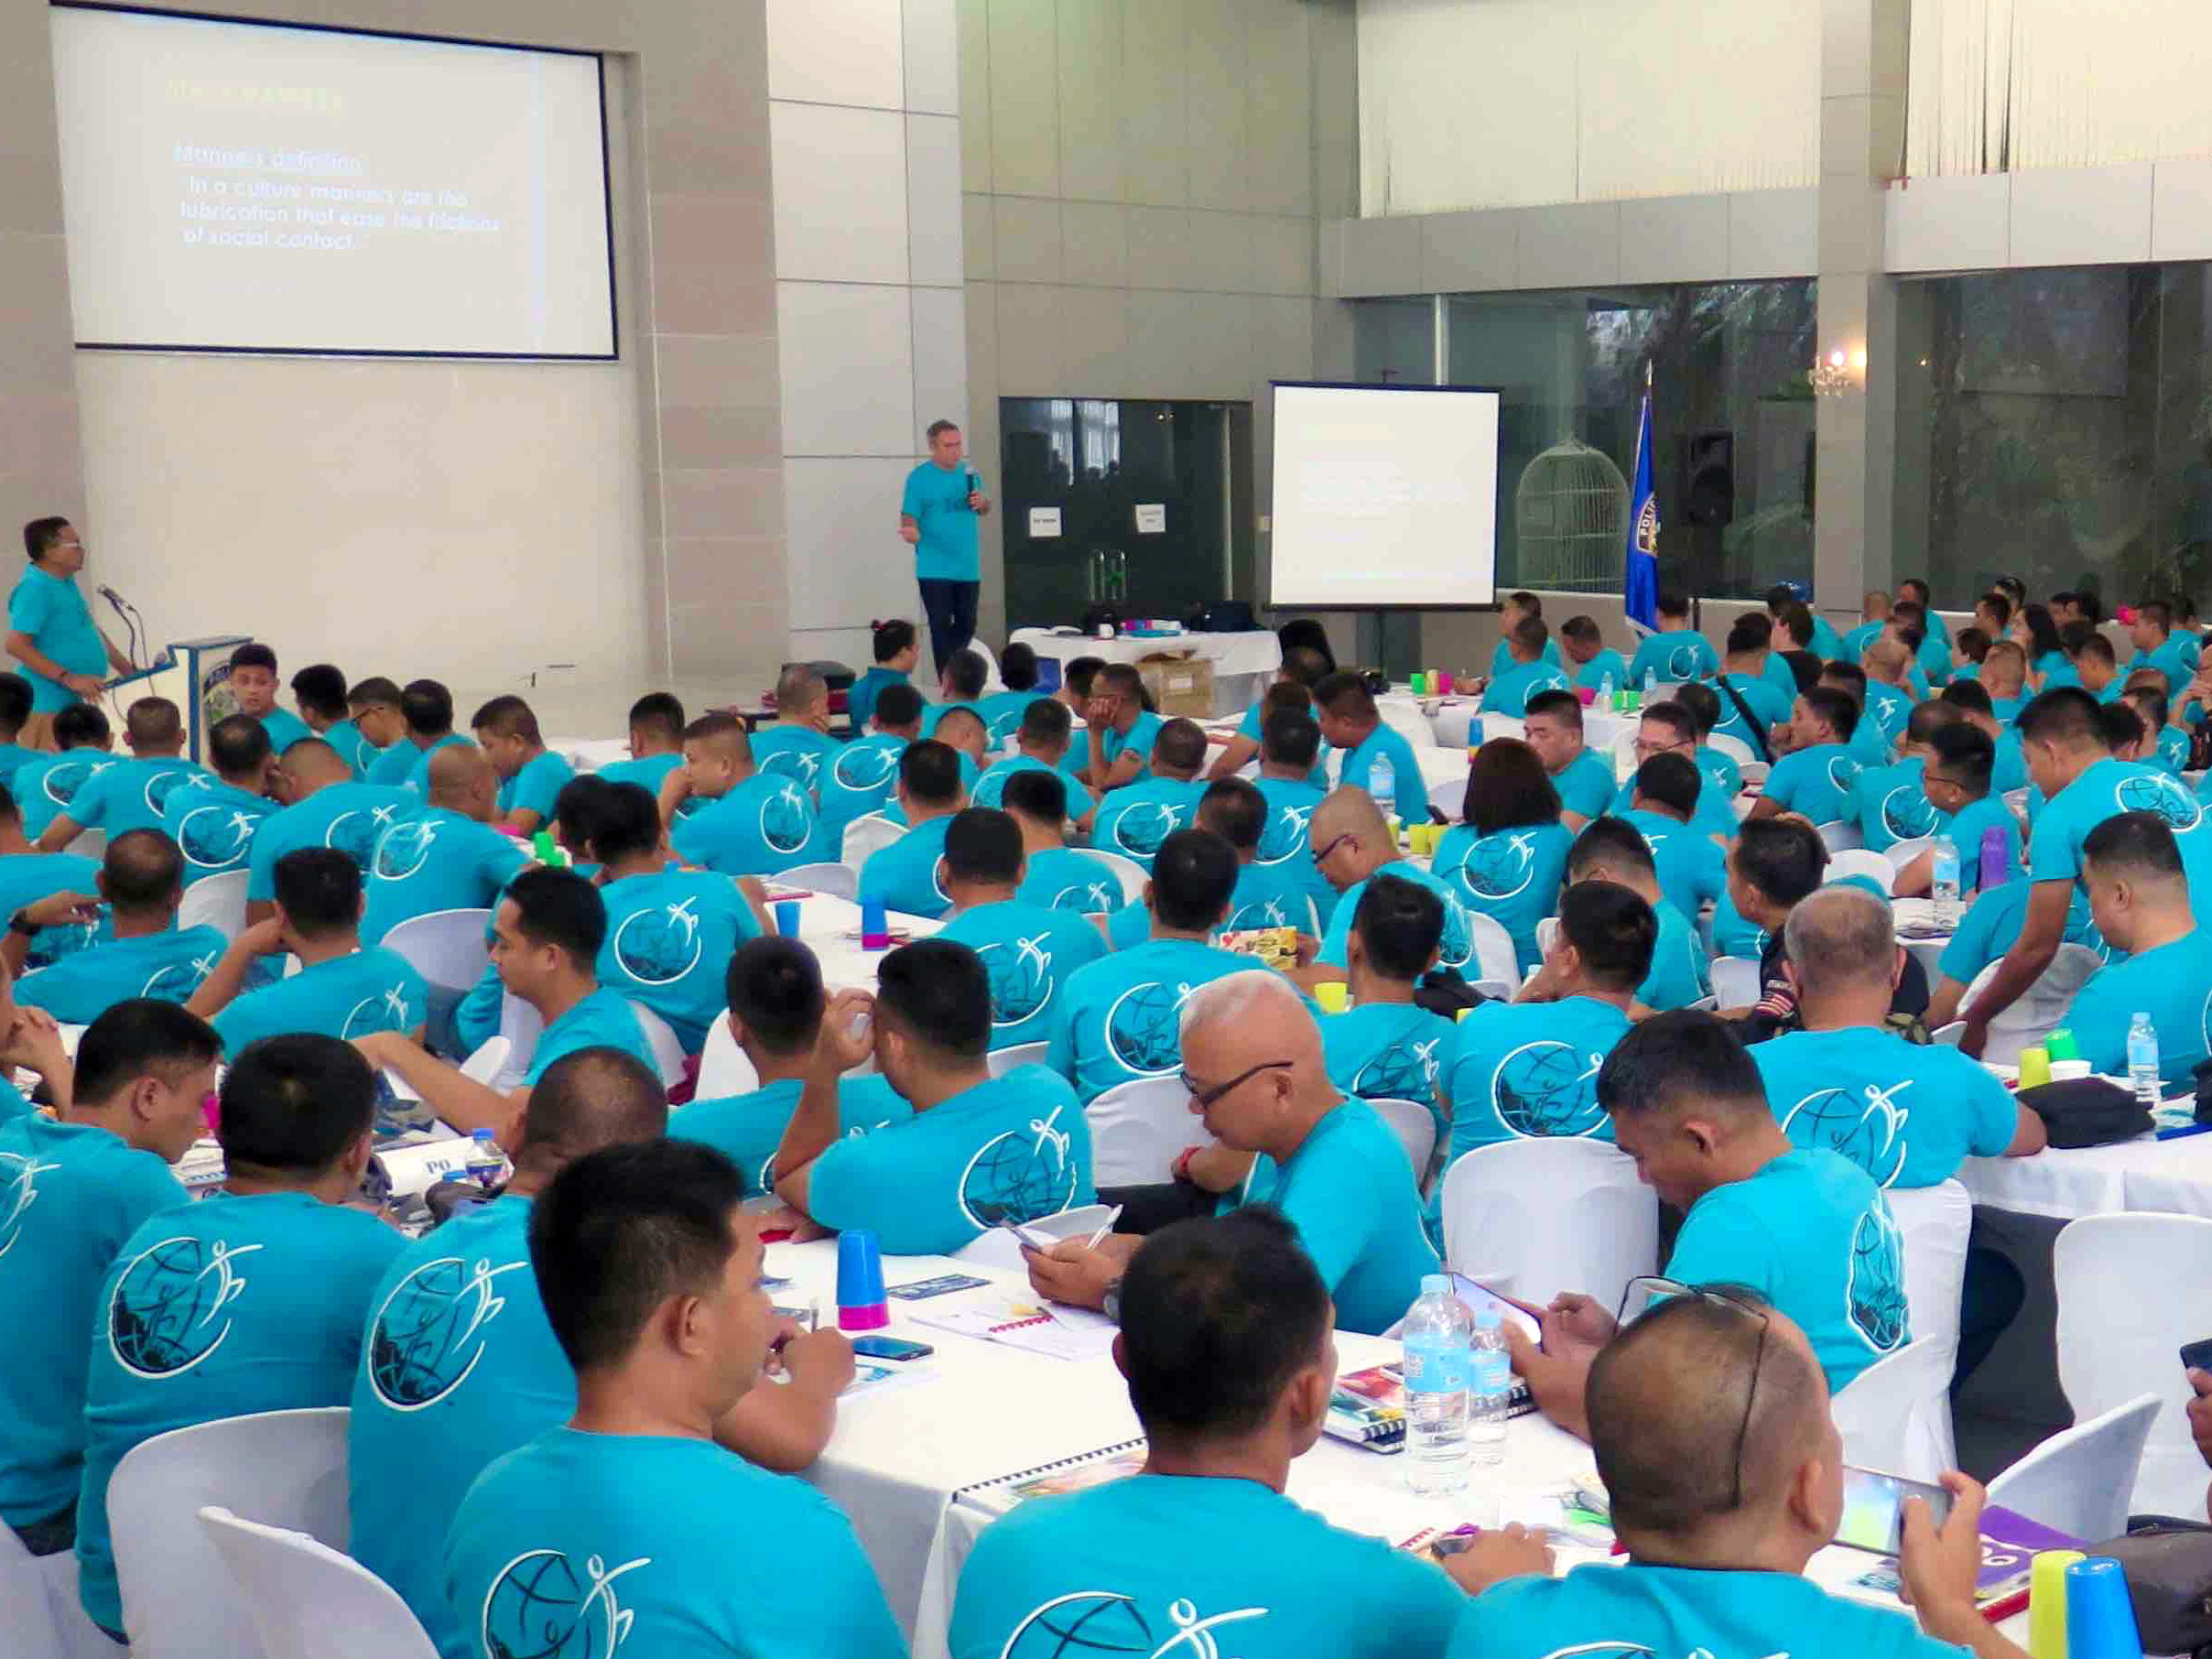 Το Ίδρυμα για Έναν Κόσμο Χωρίς Ναρκωτικά εκπαιδεύει αστυνομικούς από την Υπηρεσία Δίωξης Ναρκωτικών στις Φιλιππίνες πάνω στο πρόγραμμα Η Αλήθεια για τα Ναρκωτικά.